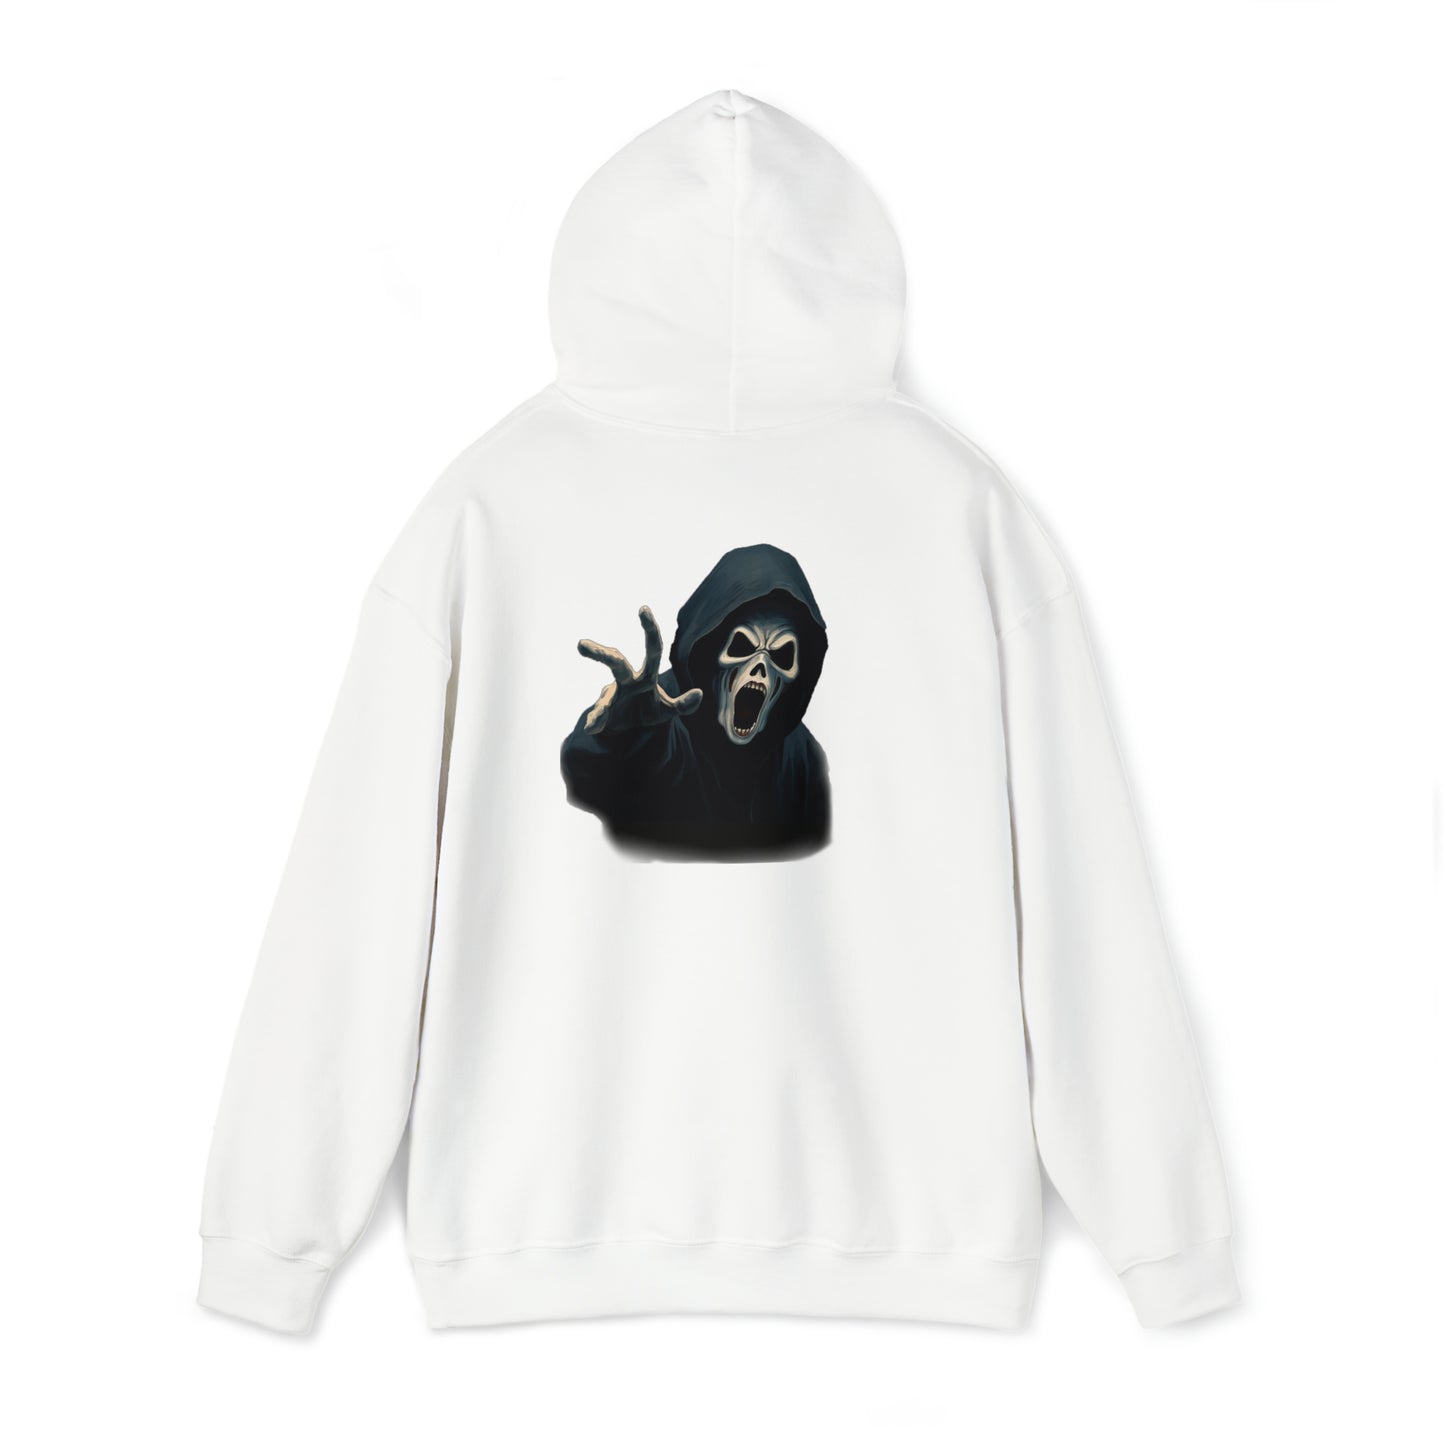 Scary Creeper Back Print Hoodie Sweatshirt